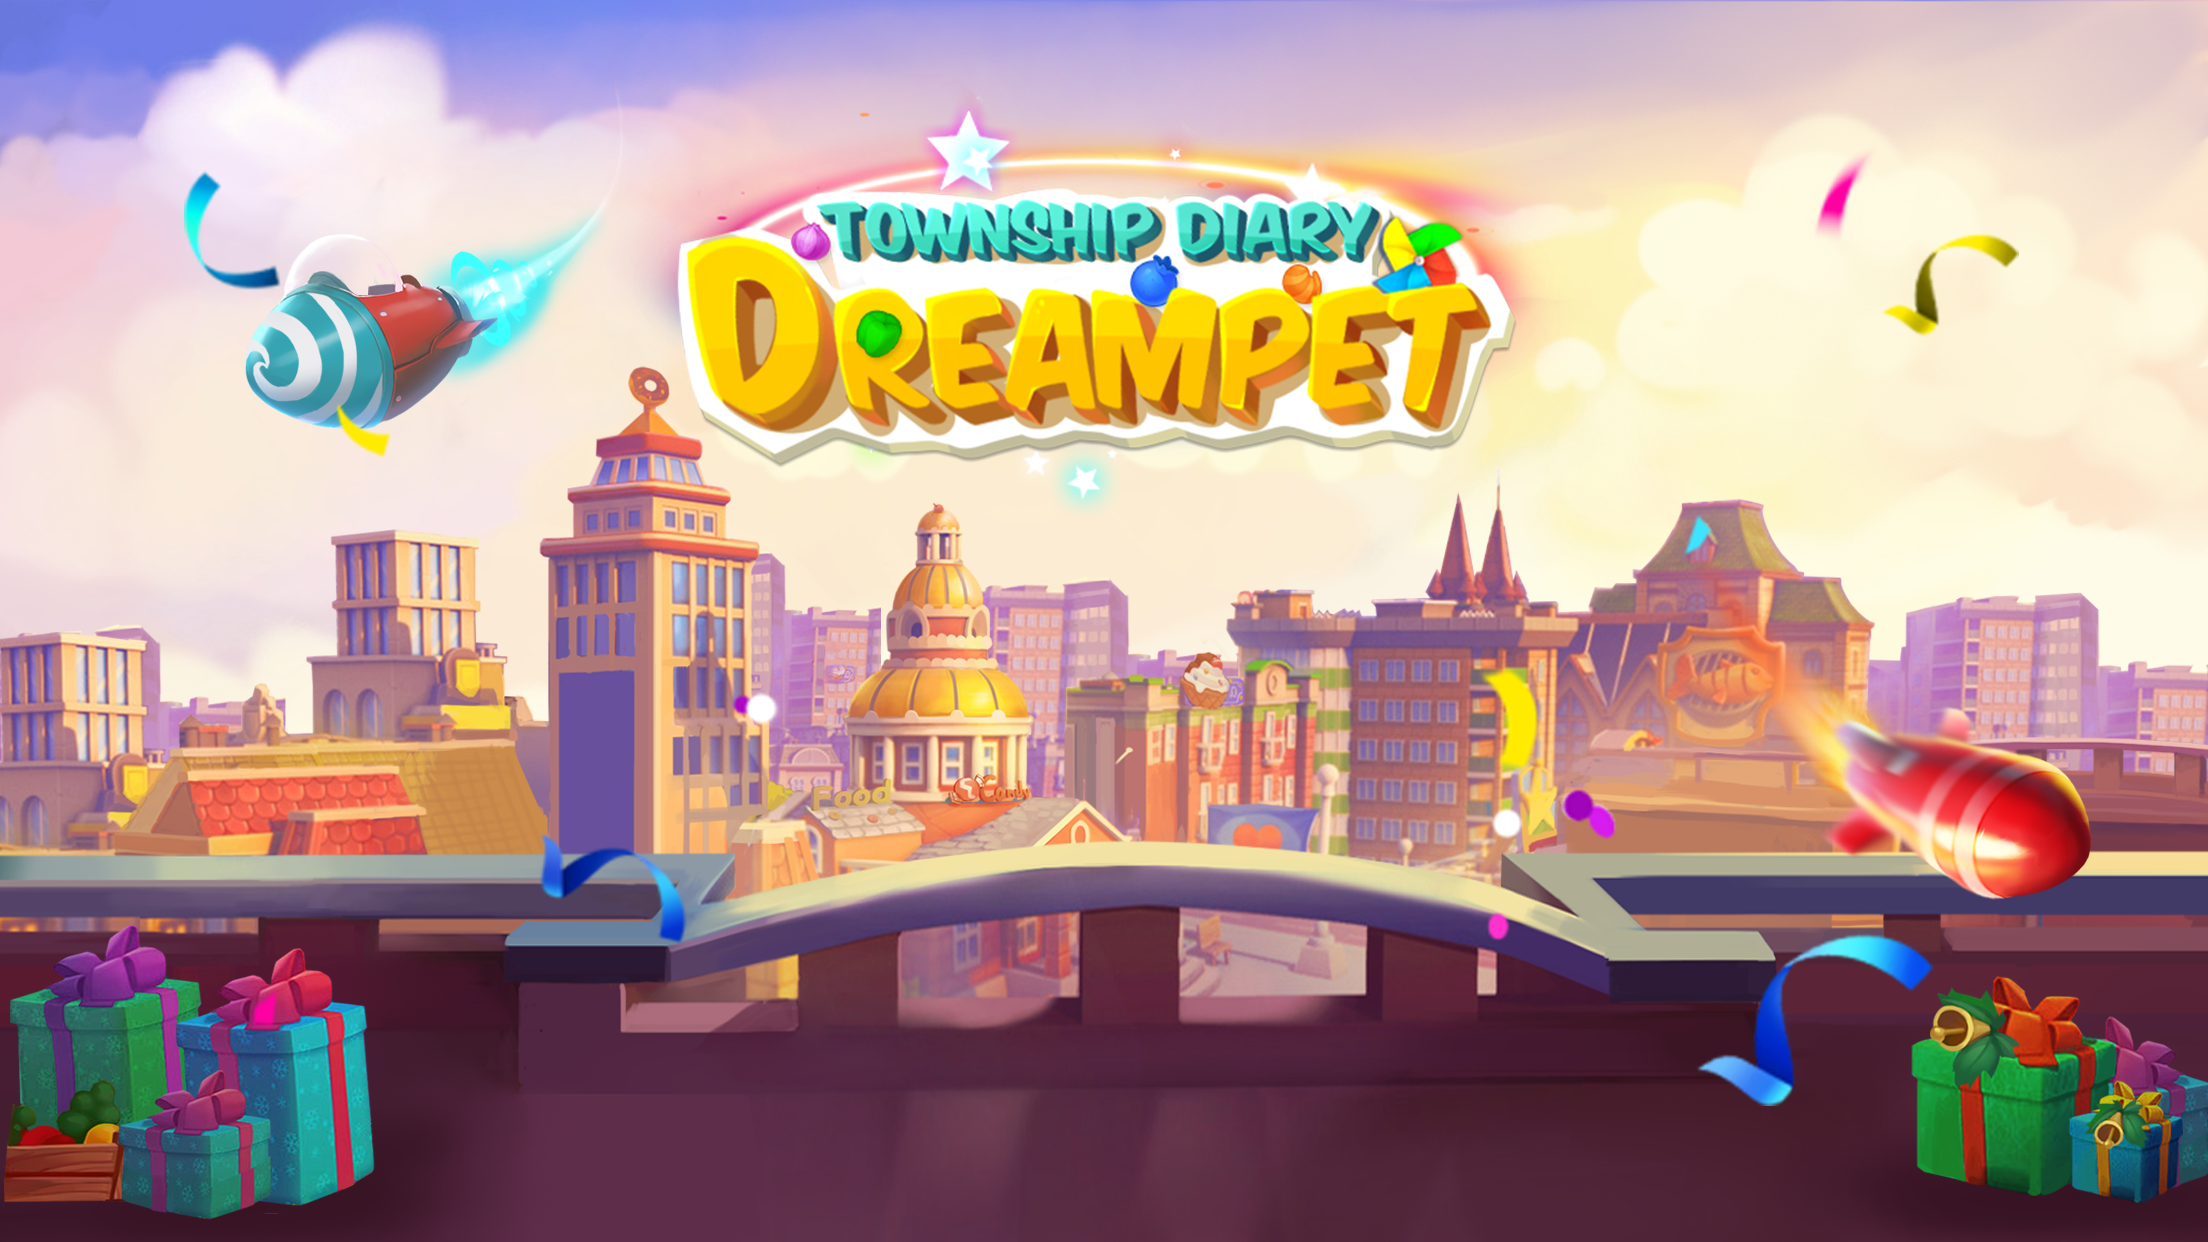 Screenshot 1 of DreamPet:Nhật ký thị trấn 1.0.4